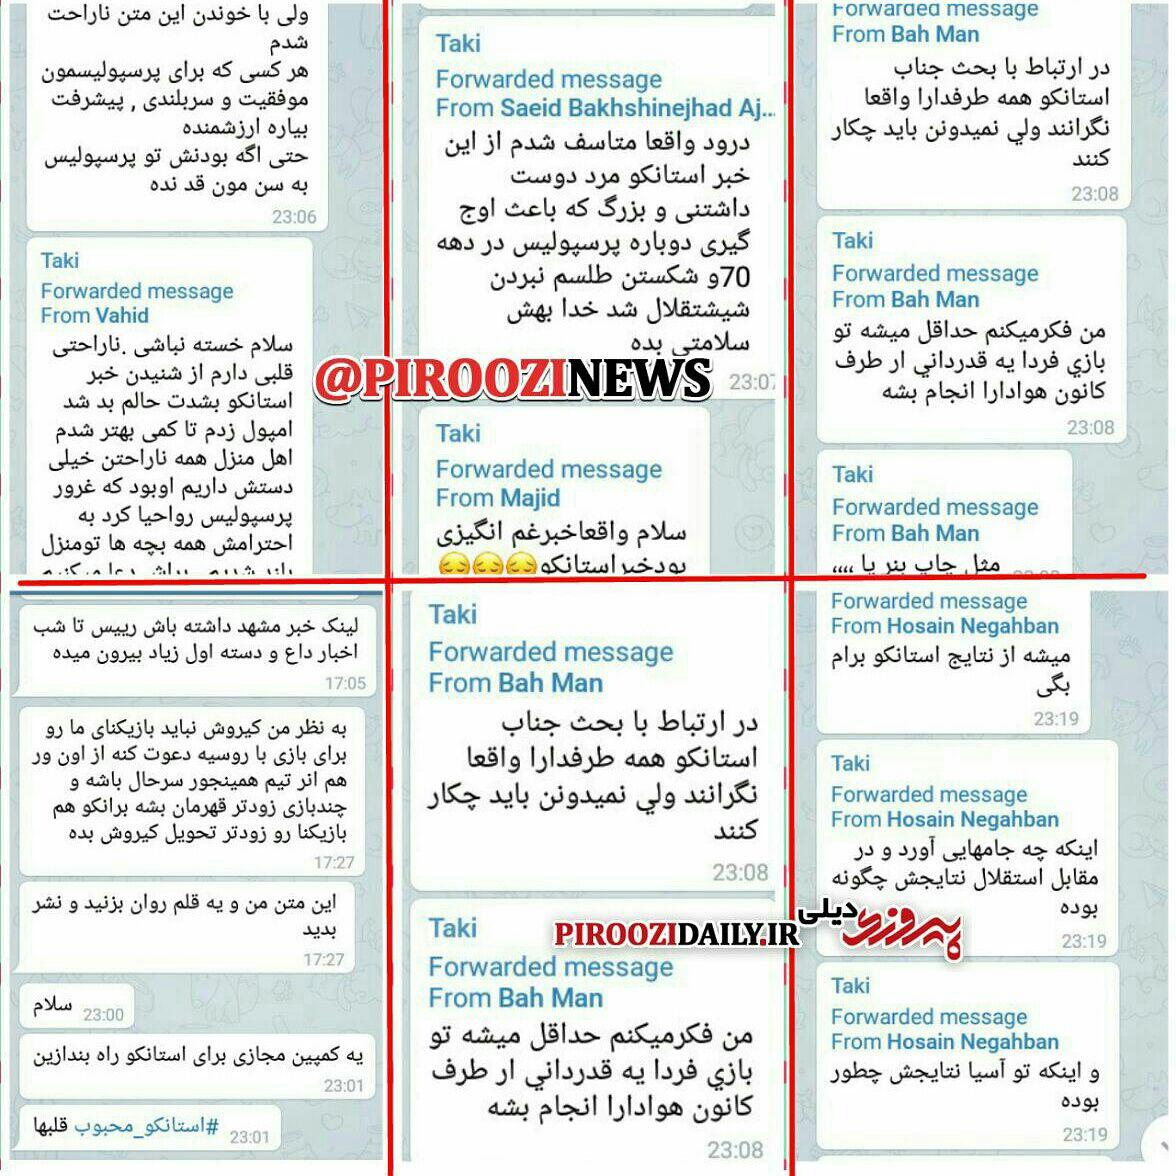 فراخوان روزنامه پیروزی و سایت پیروزی دیلی برای قدردانی هواداران از استانکو